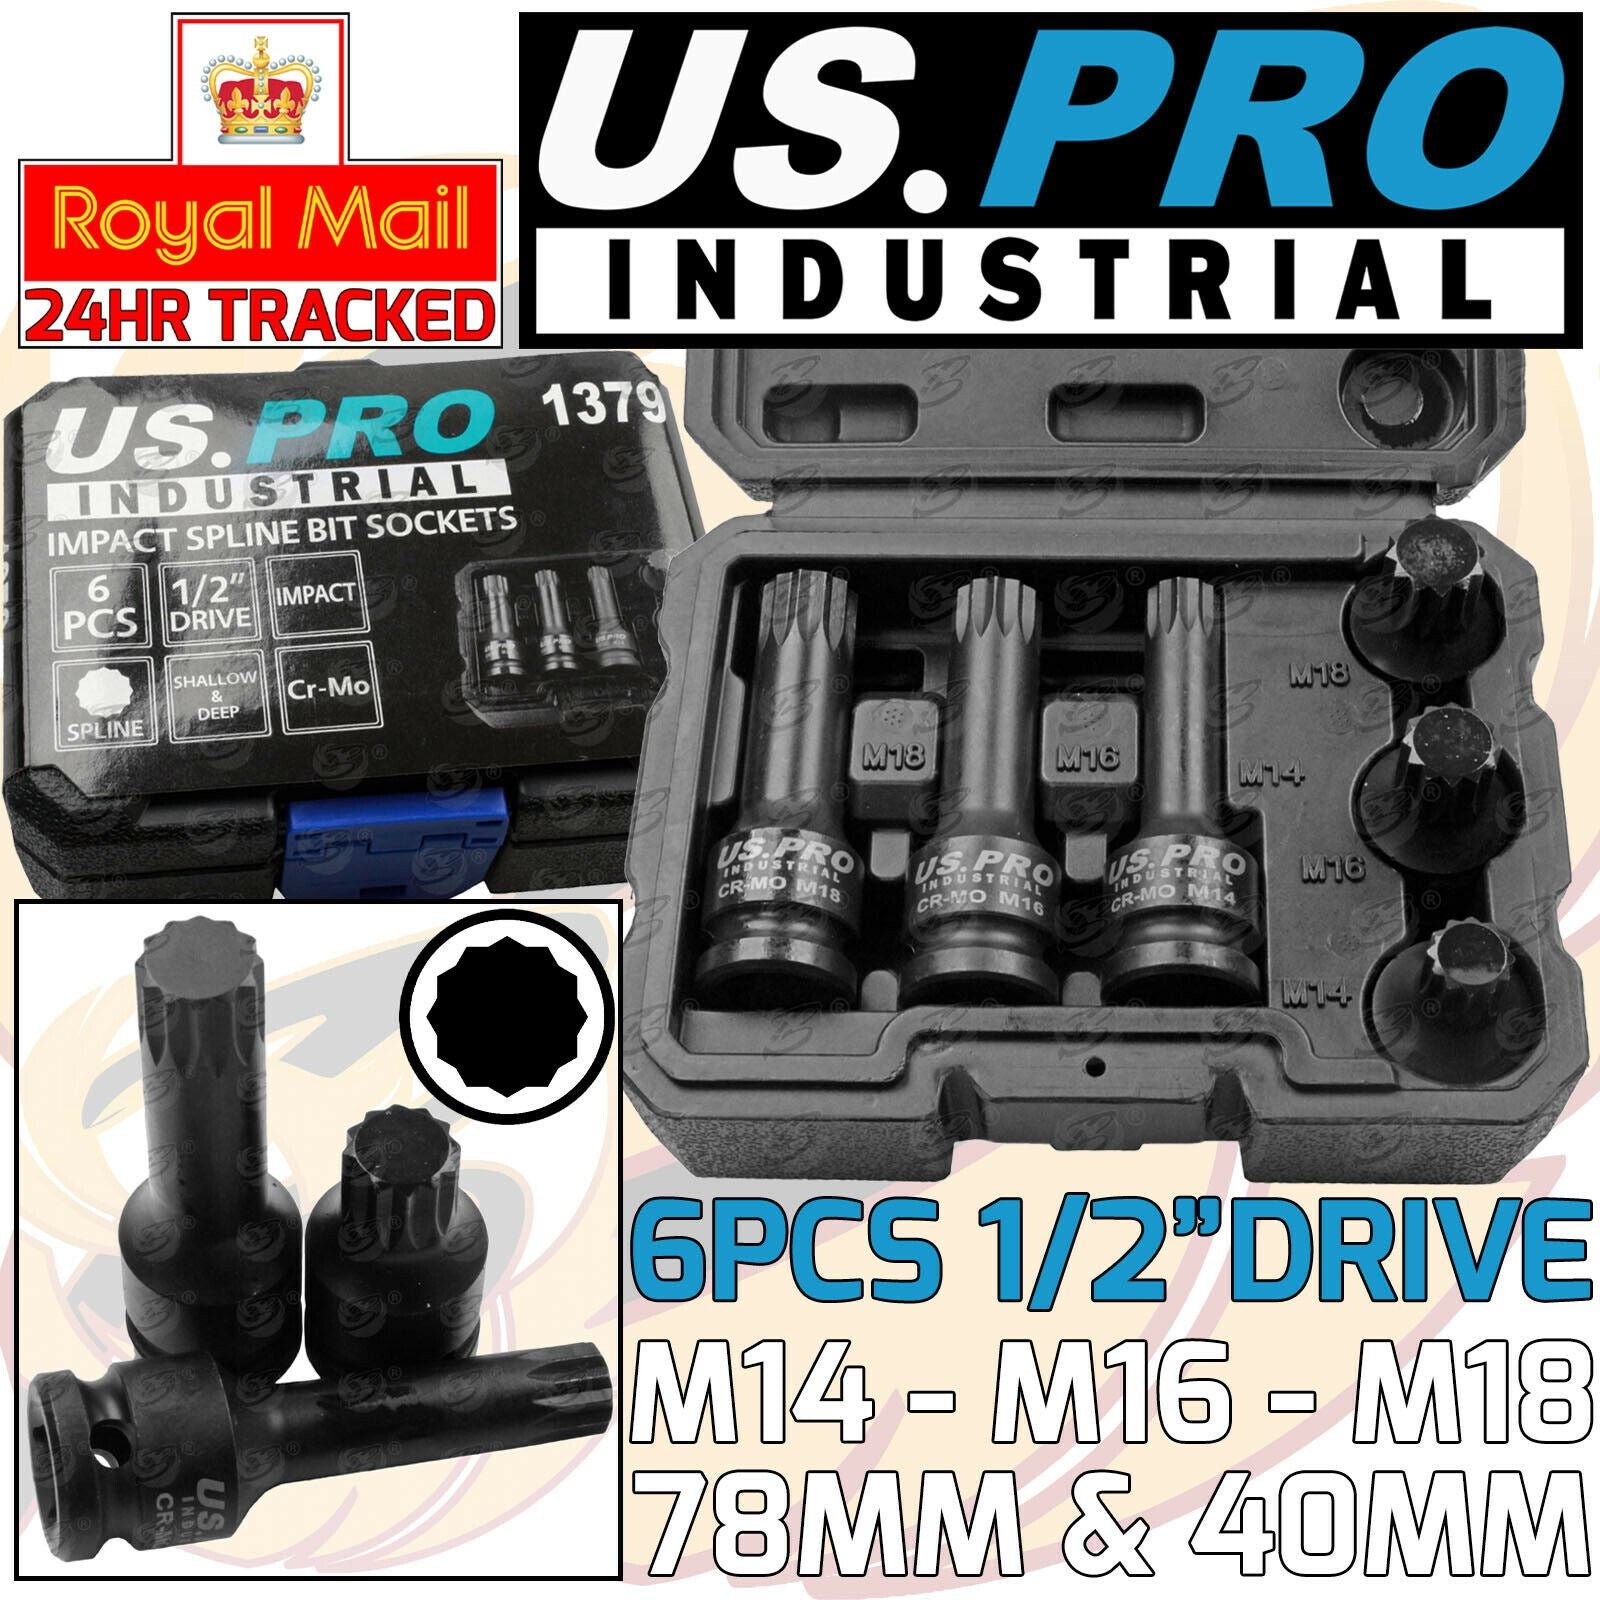 US PRO INDUSTRIAL 6PCS 1/2" DRIVE IMPACT SPLINE BIT SOCKETS M14 - M18